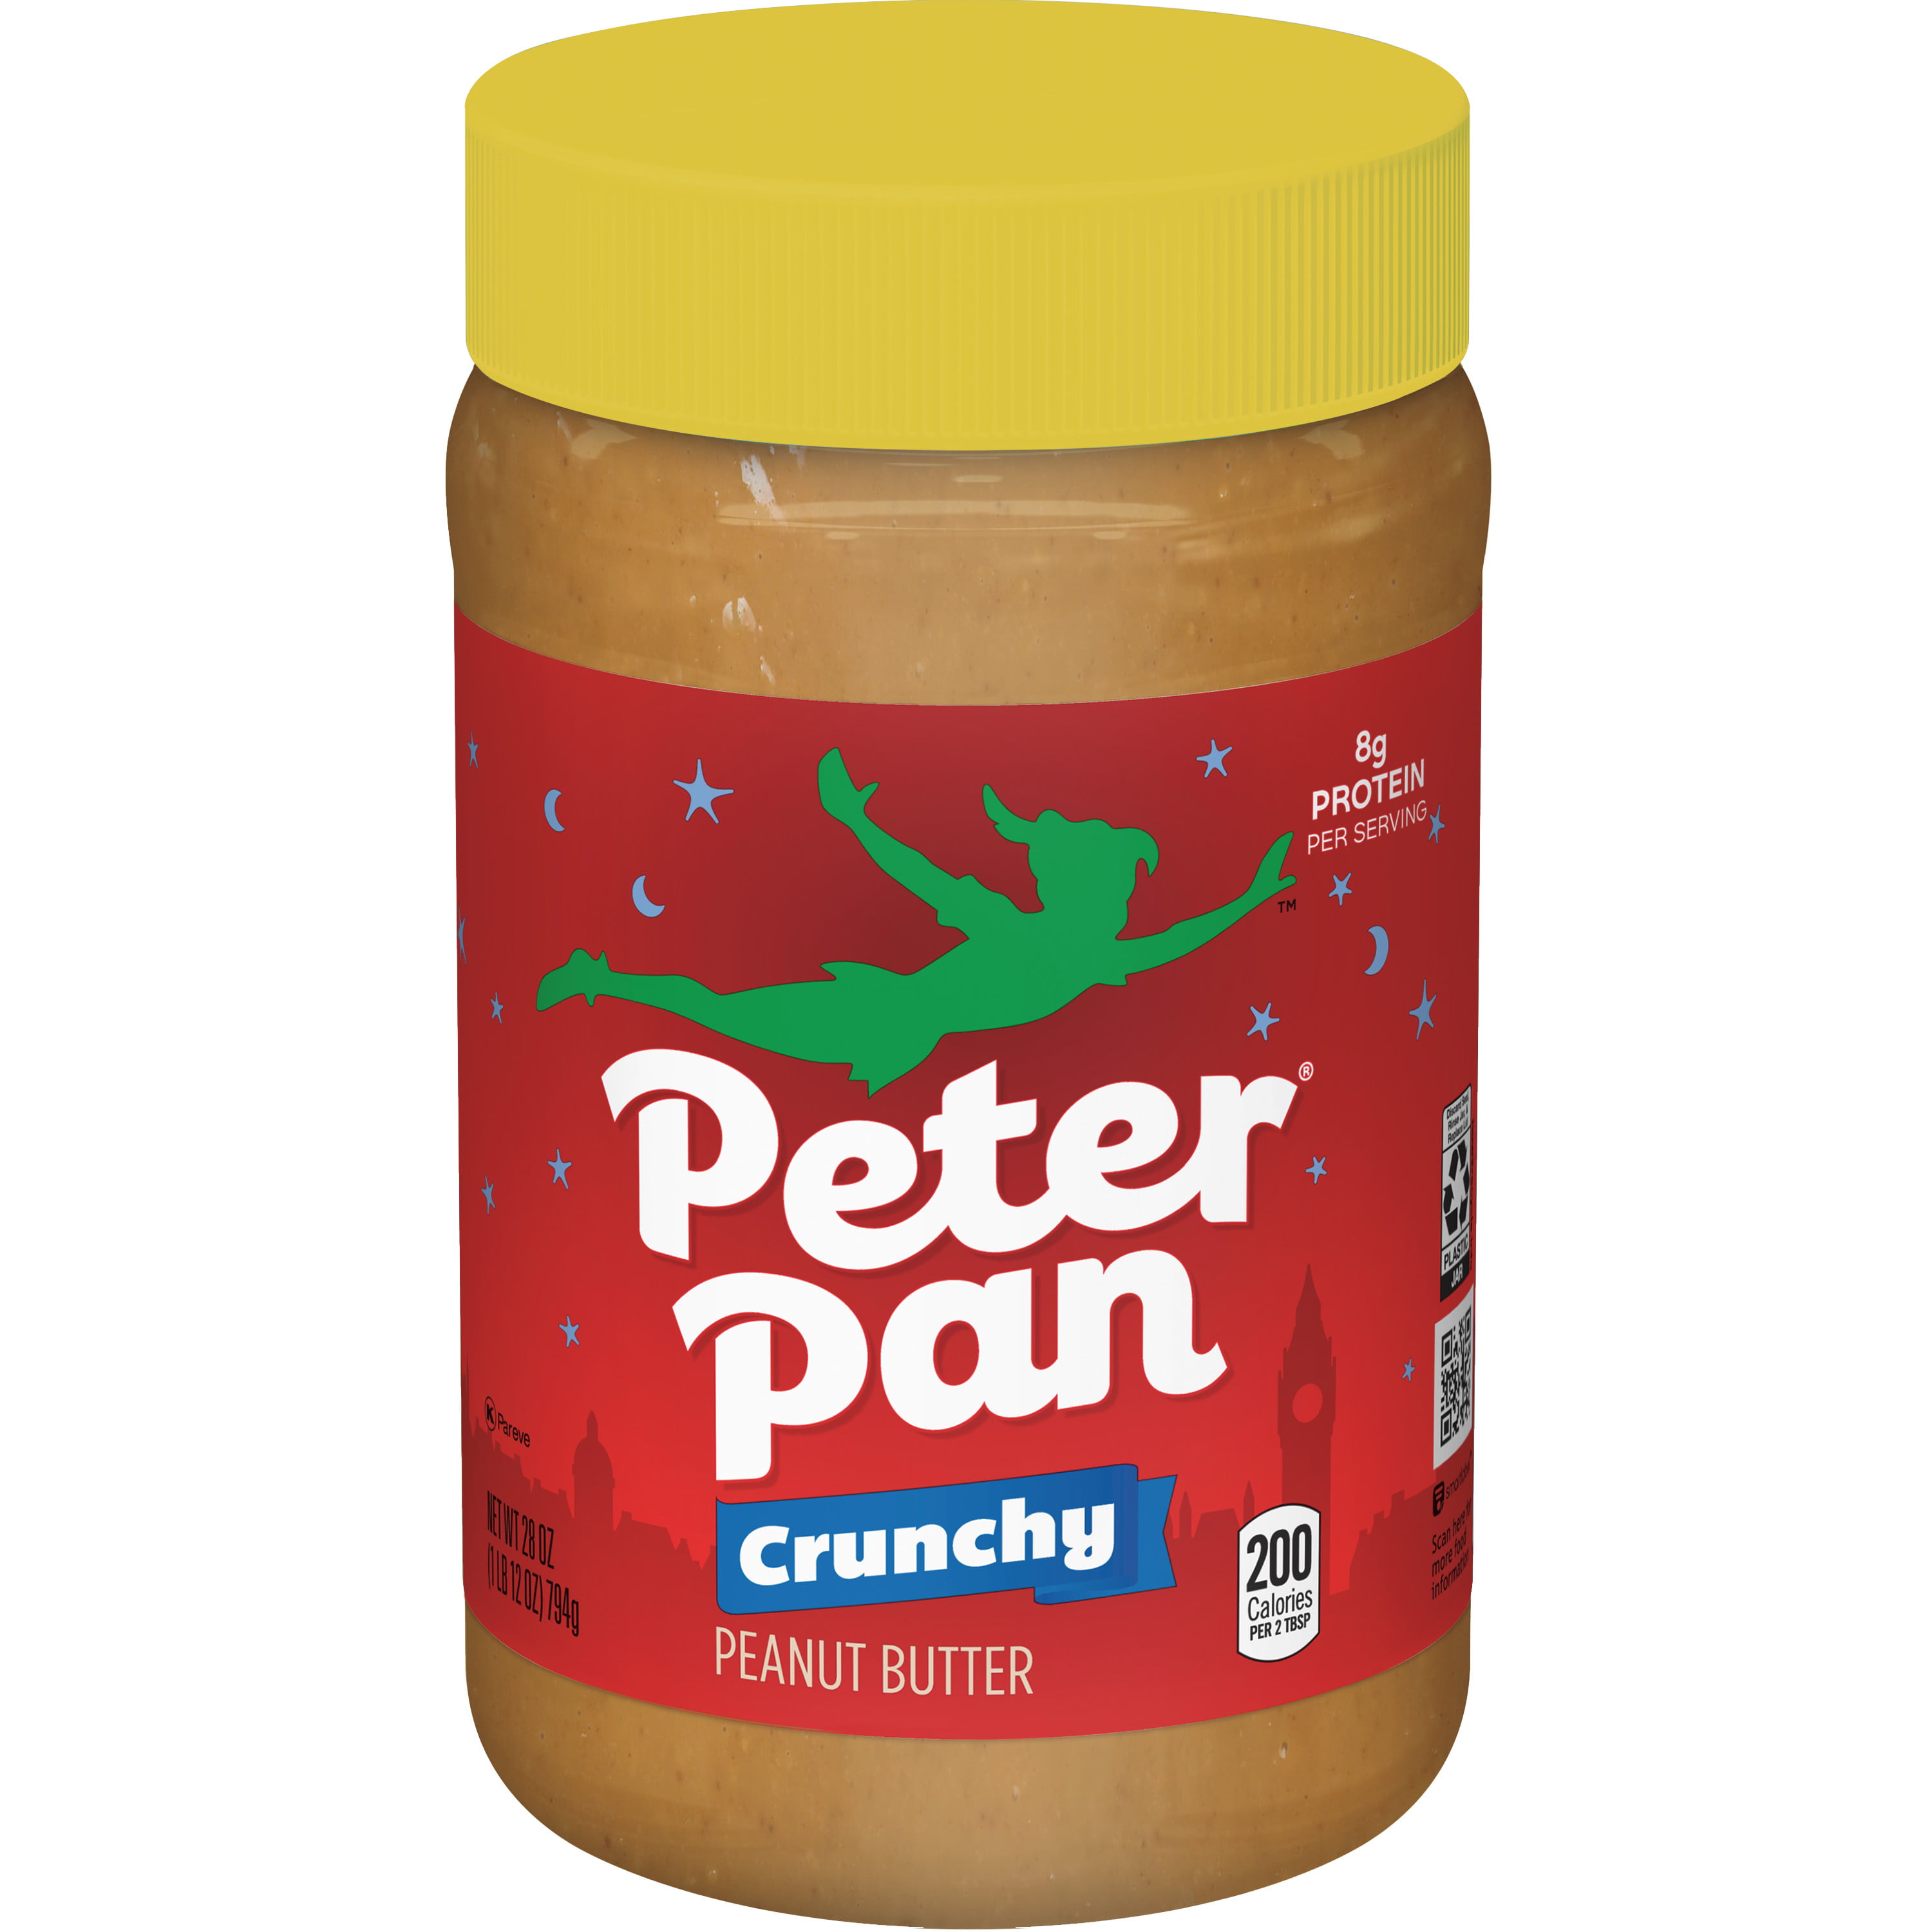 Peter Pan Crunchy Original Peanut Butter 28 oz. - Walmart.com